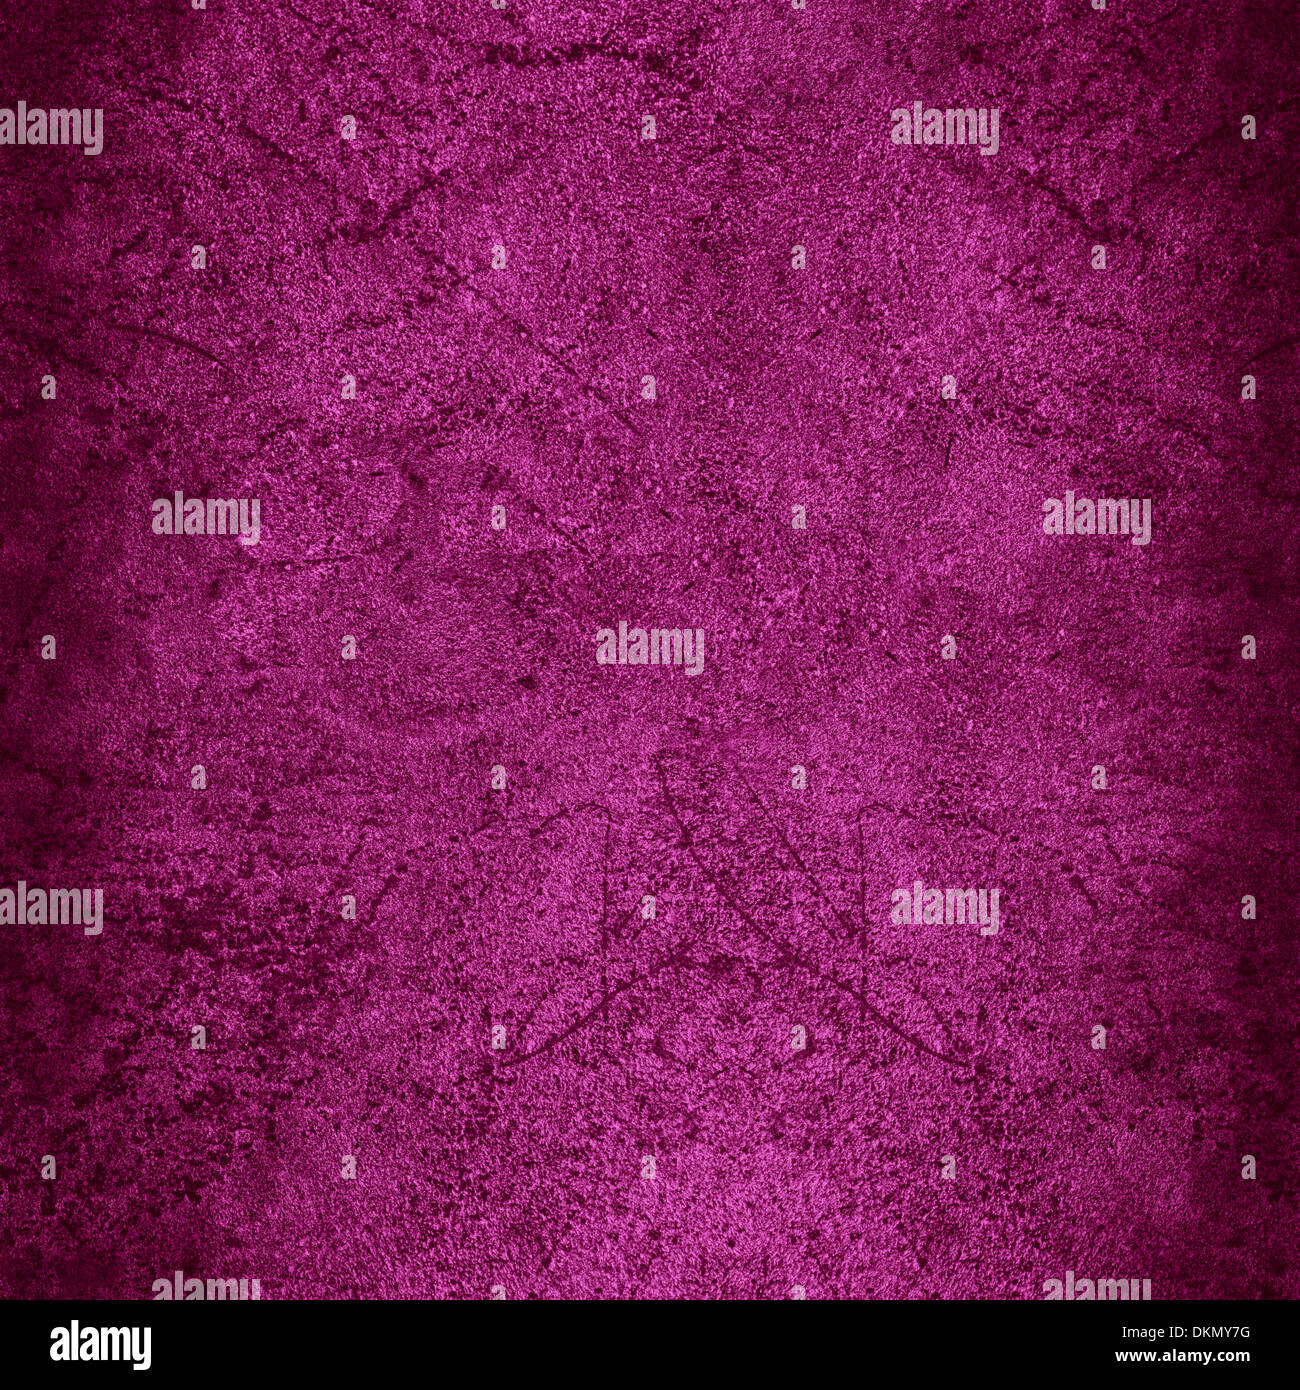 Plaque de métal rouille vieux rose ou violet abstract background texture vintage Banque D'Images